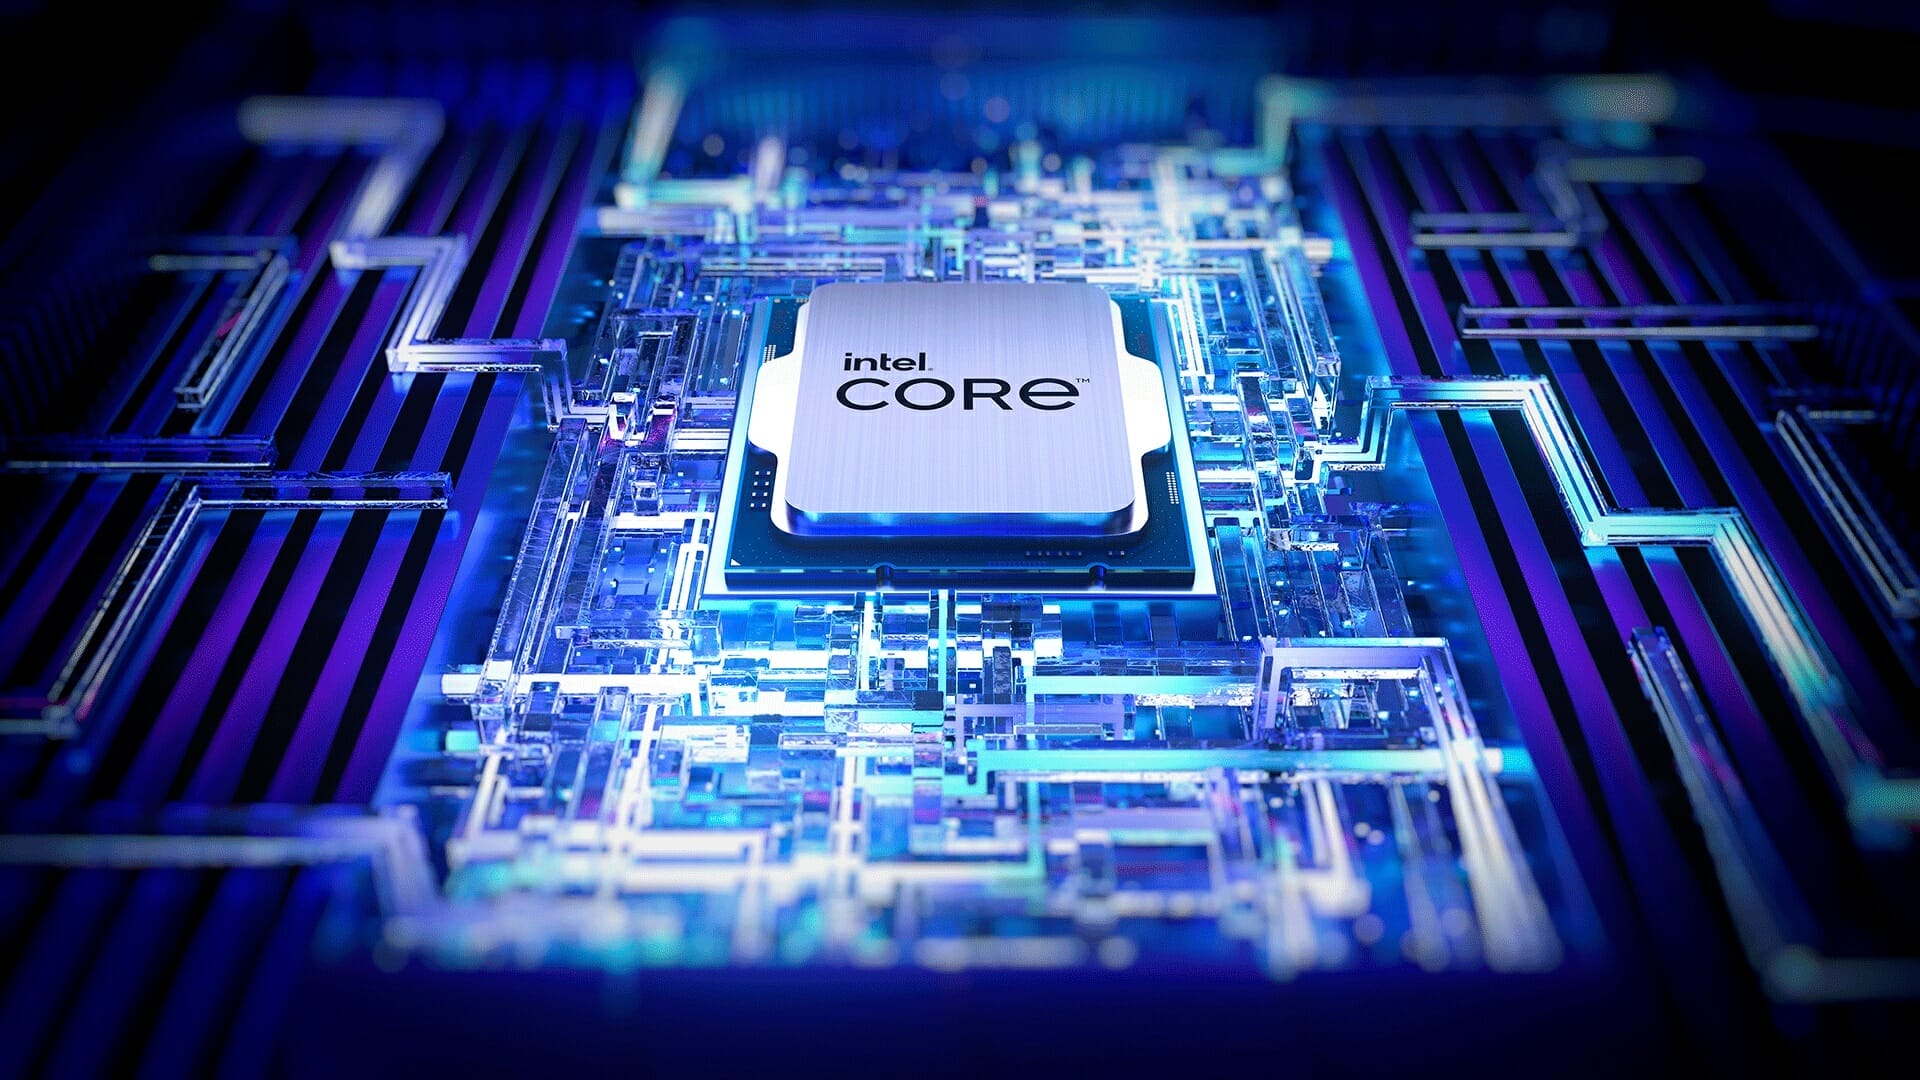 เปิดตัว Intel Core เจเนอเรชัน 13 พร้อมโซลูชัน Intel Unison ใหม่ เล่นเกมที่ดีที่สุดในโลกและความสามารถในการ โอเวอร์คล็อกที่เหนือชั้น